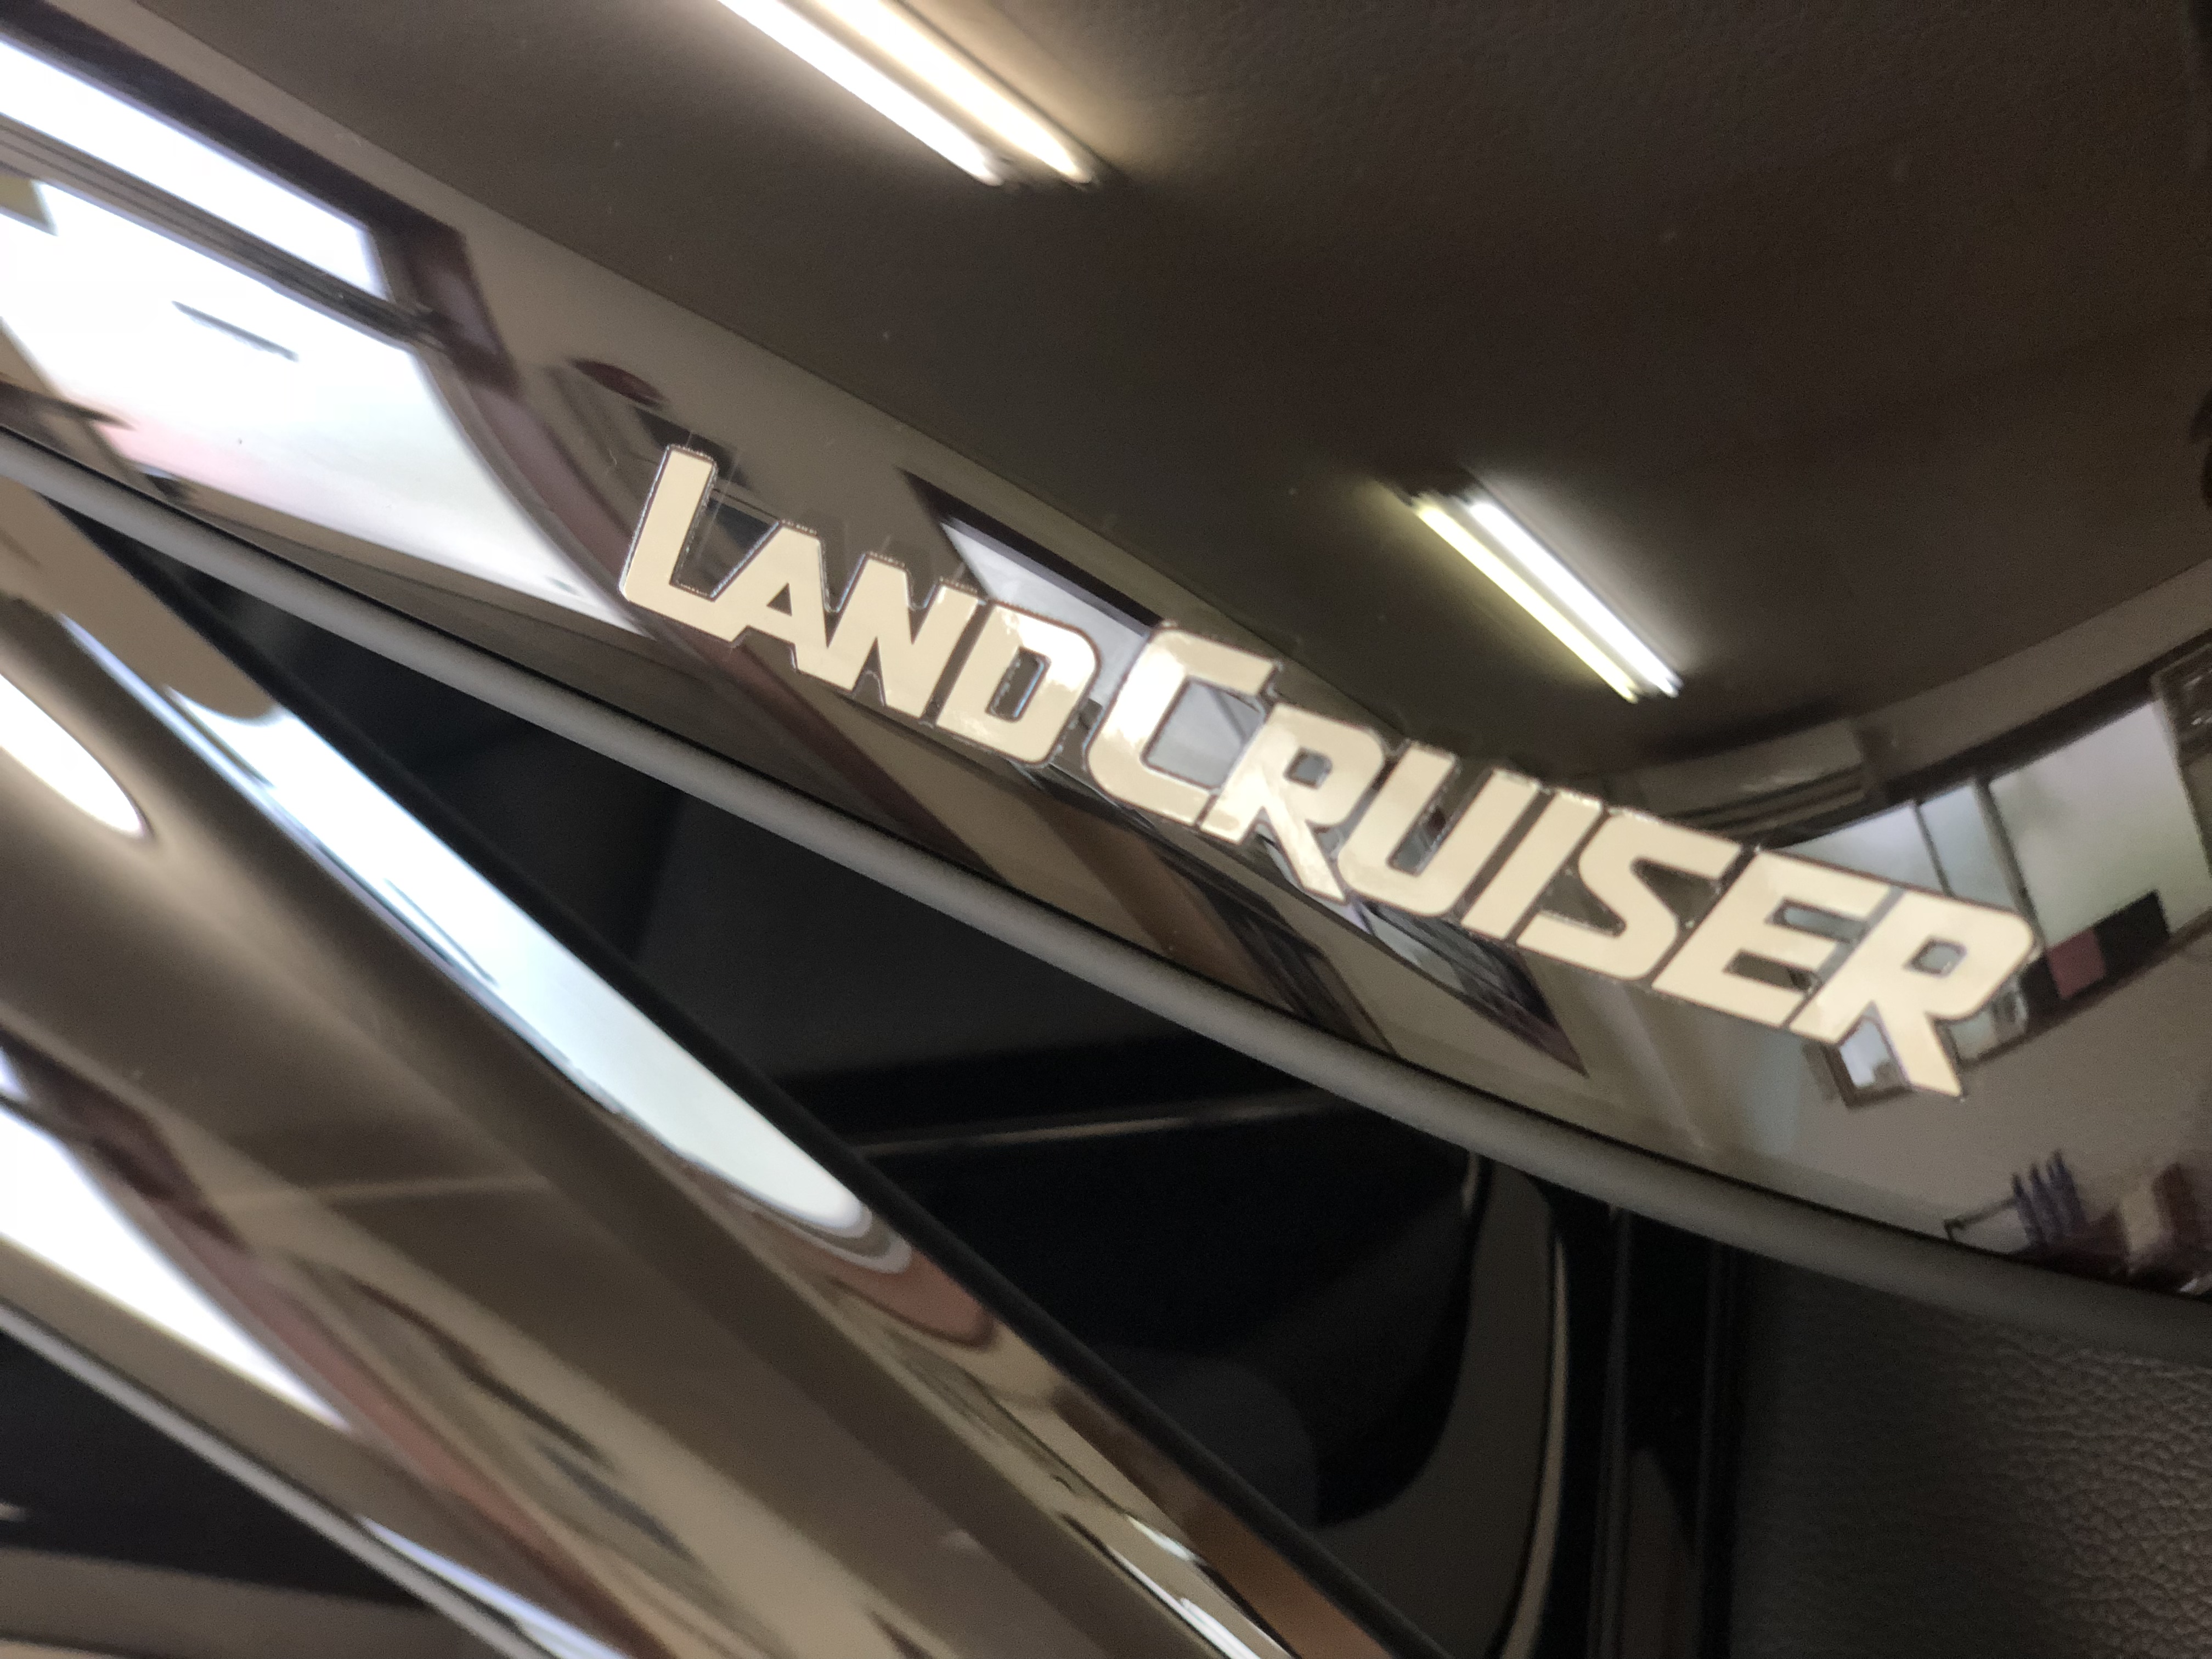 78プラド LAND CRUISERロゴ ドアバイザー ｜ CUSTOM WORKS ～全塗装、車検整備、クリーニング、カスタム、パーツ販売～